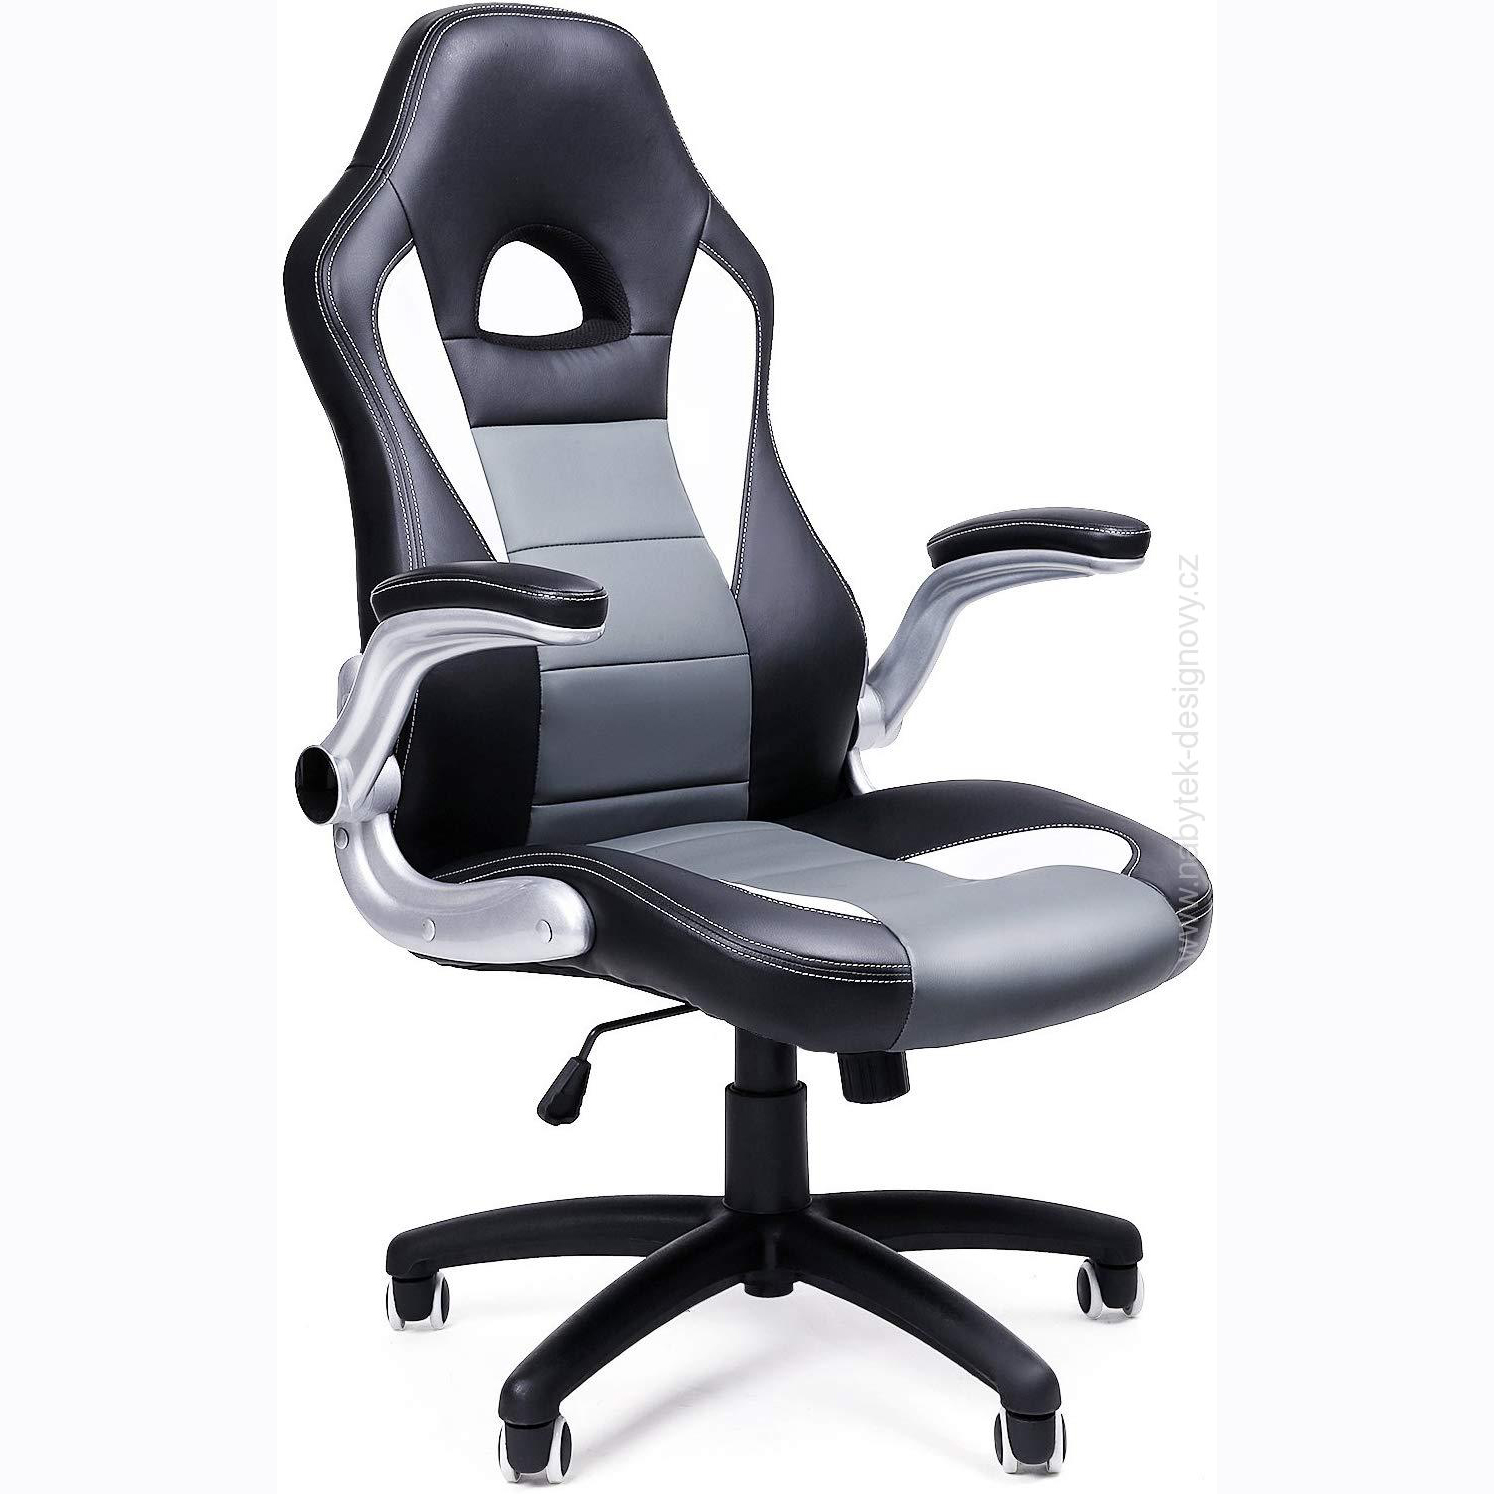 Kancelárska stolička Racing Grey, pre PC stoly